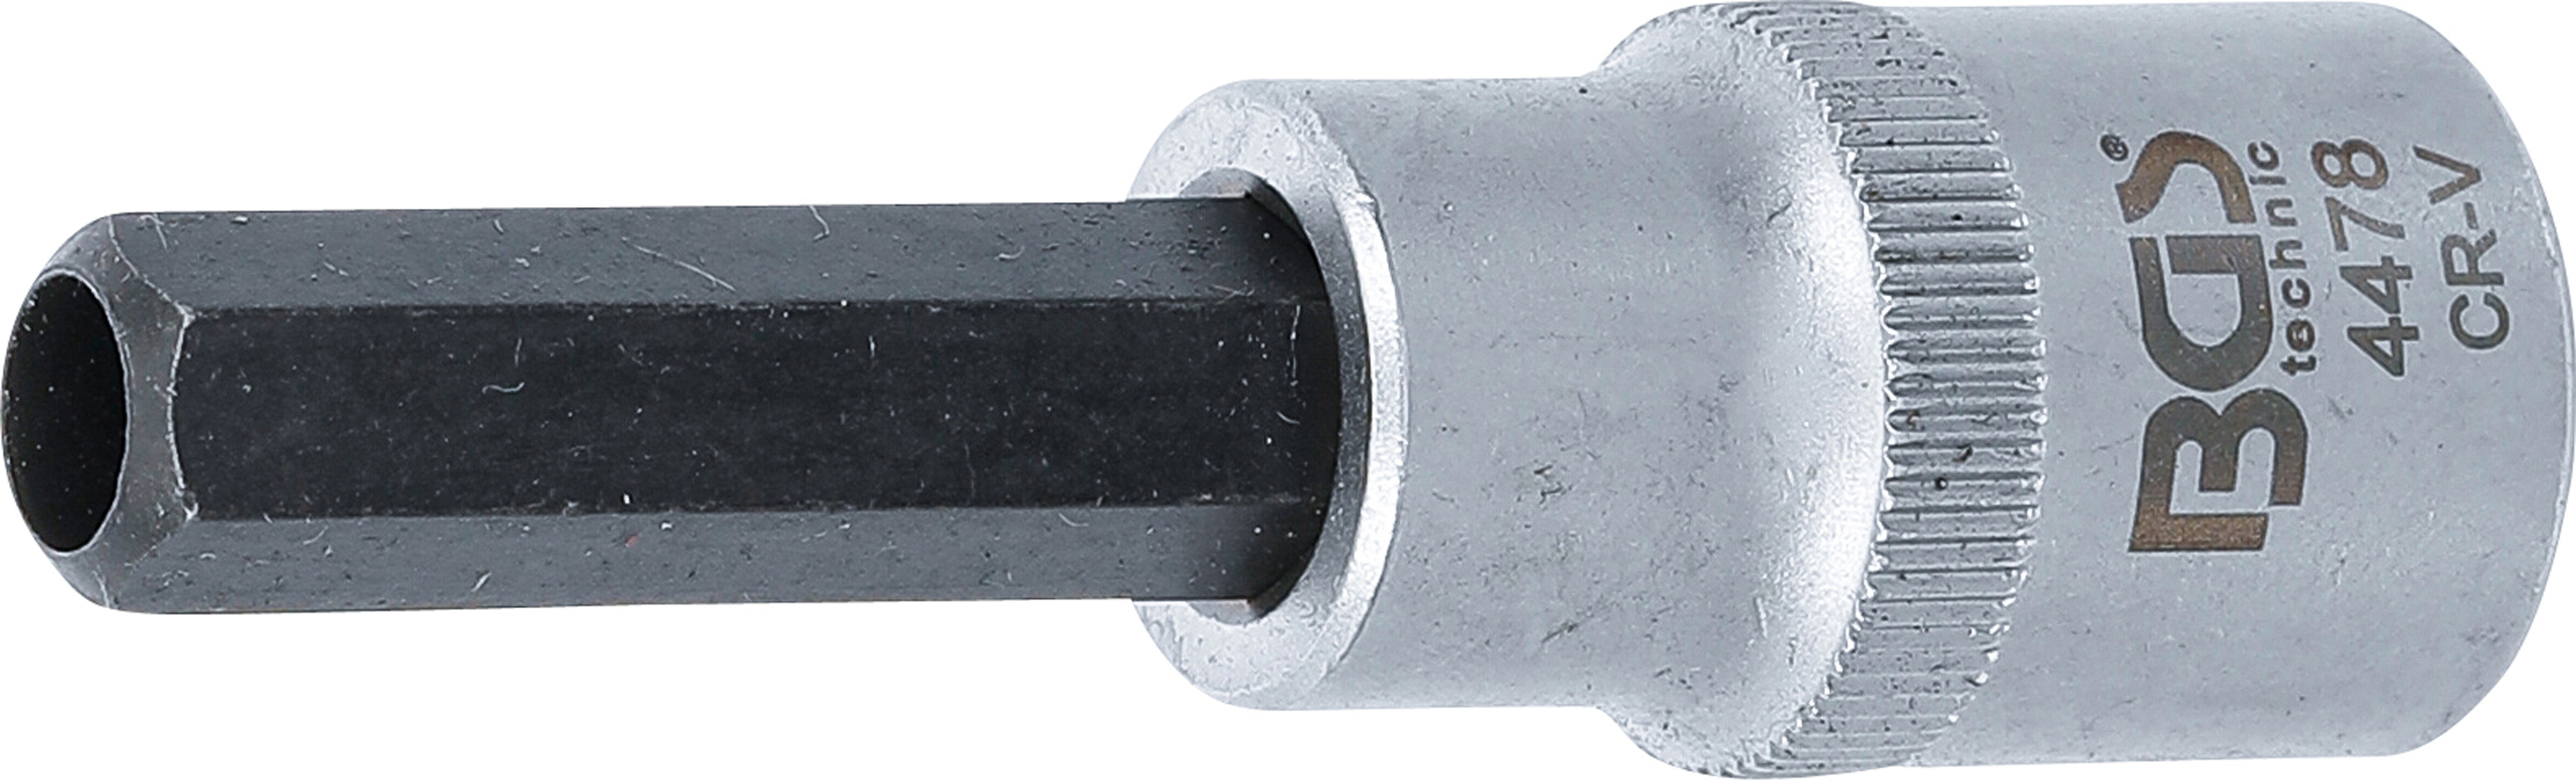 Nástrčný klíč s otvorem, IMBUS, 10 mm, 1/2" - B4478